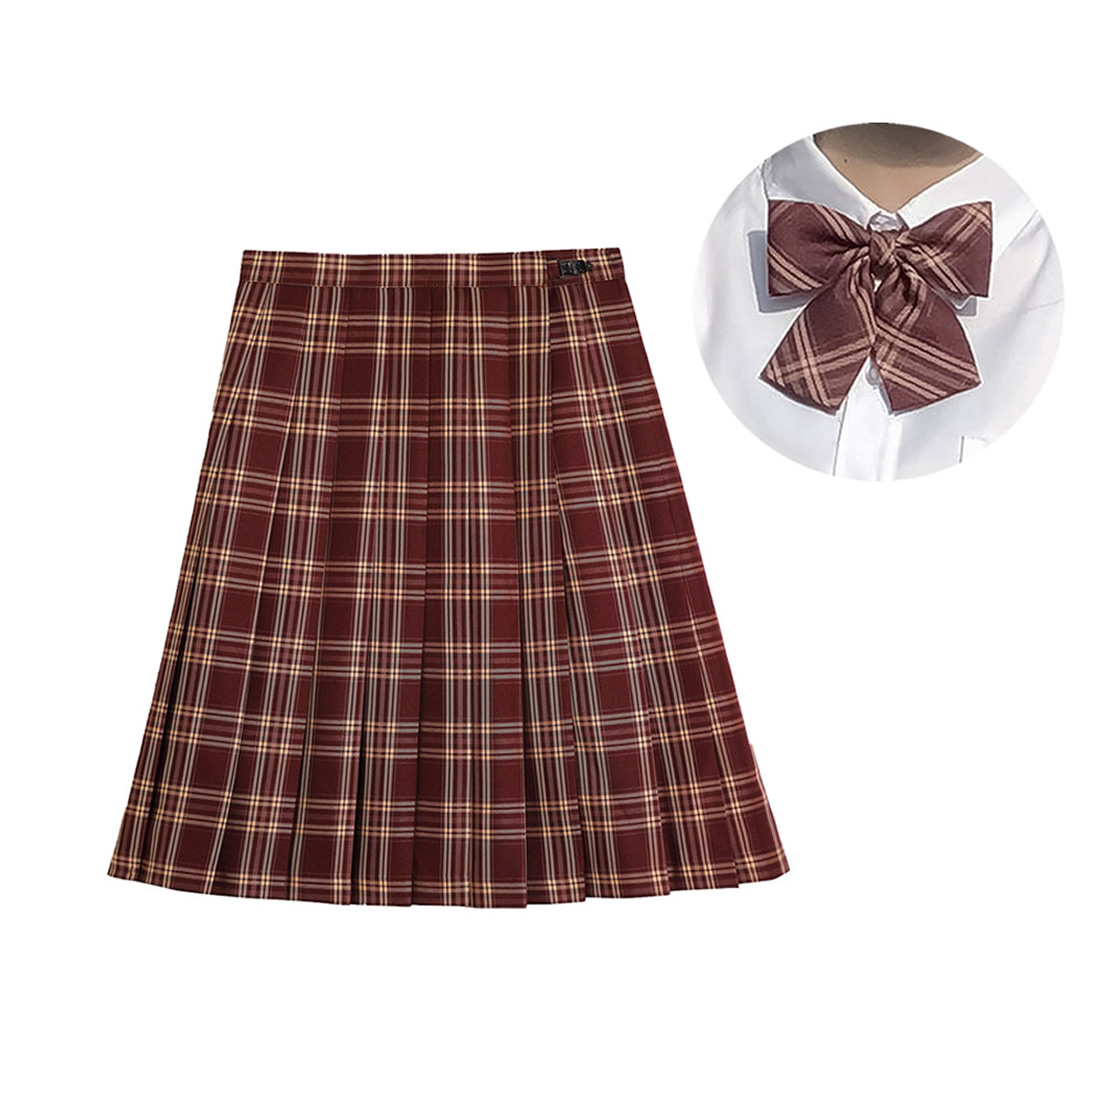 C skirt bow tie